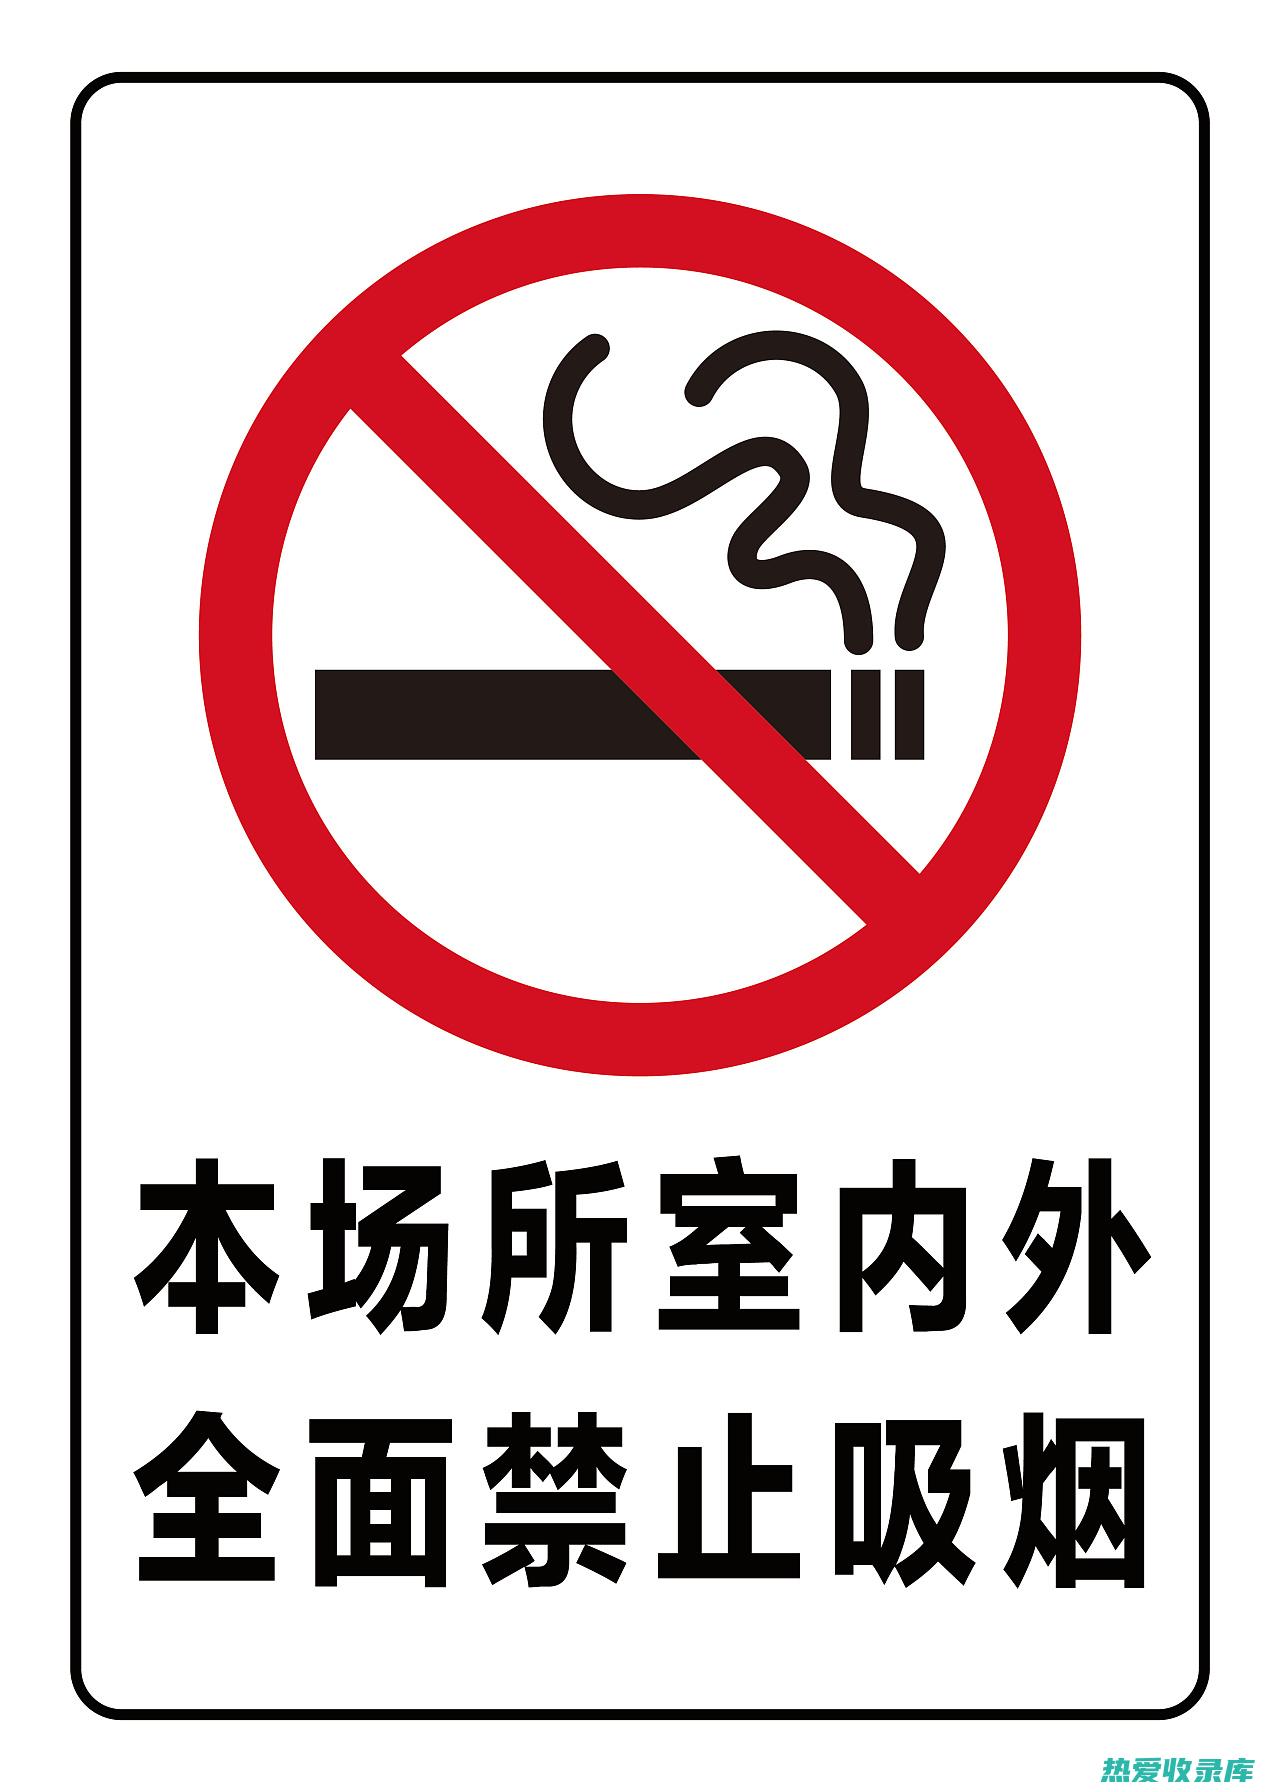 不要让吸烟者在你身边吸烟。如果你与吸烟者在一起，请礼貌地要求他们远离你吸烟。